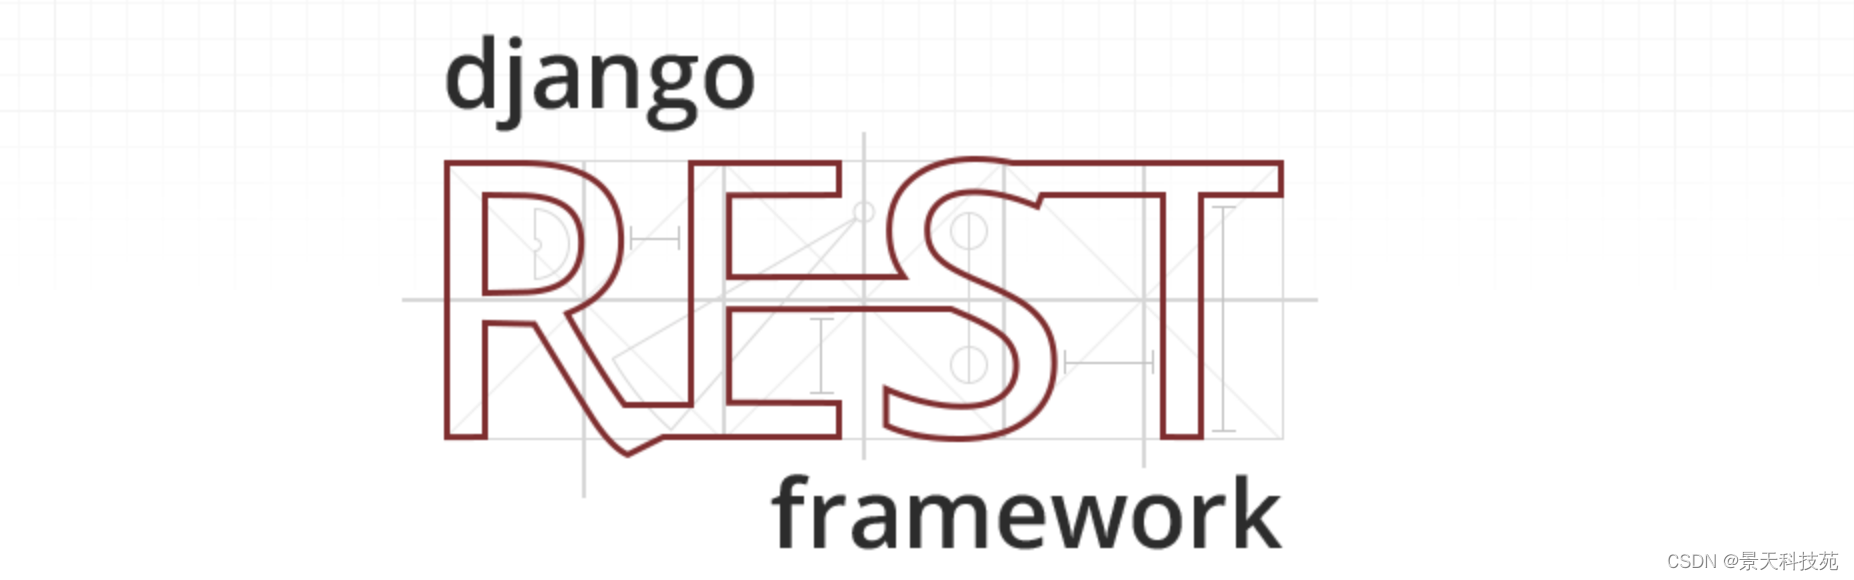 全面掌握Django的web框架Django Rest_Framework（一）